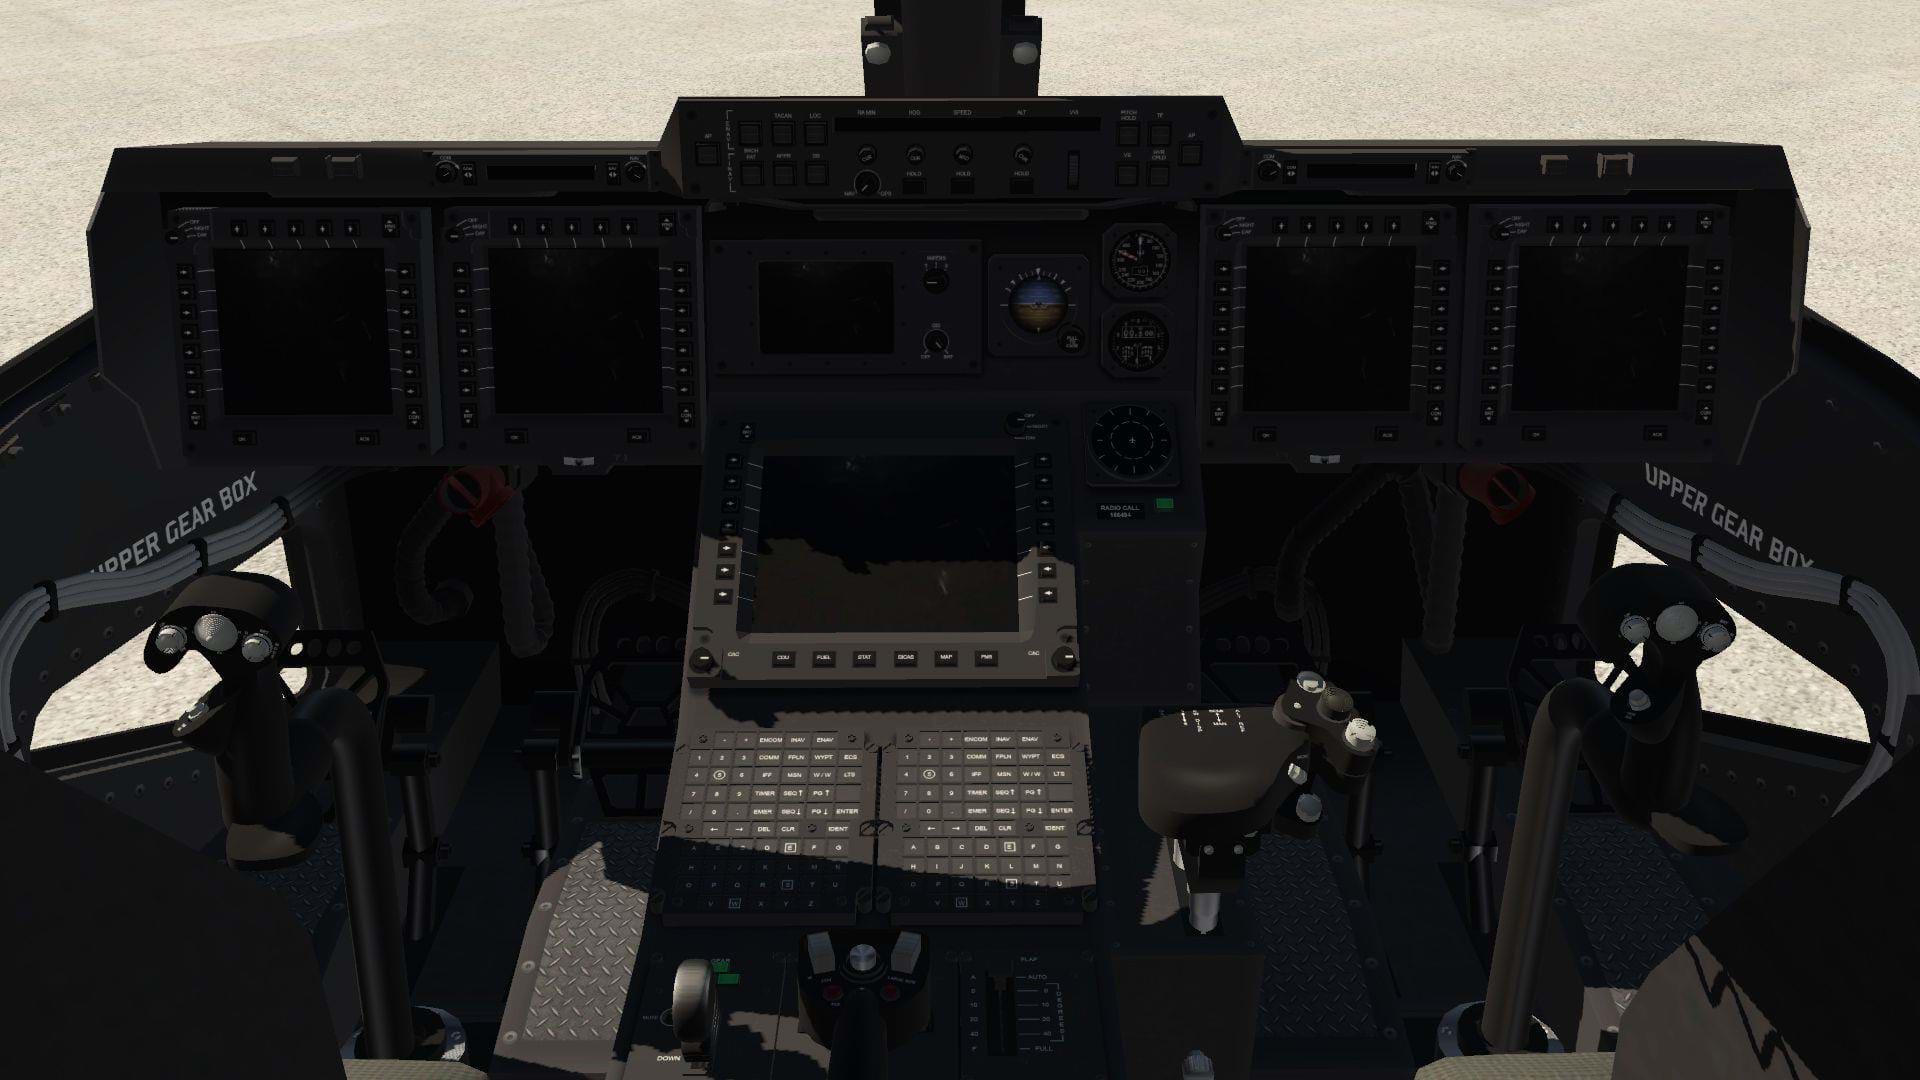 AOA V-22 for X-Plane